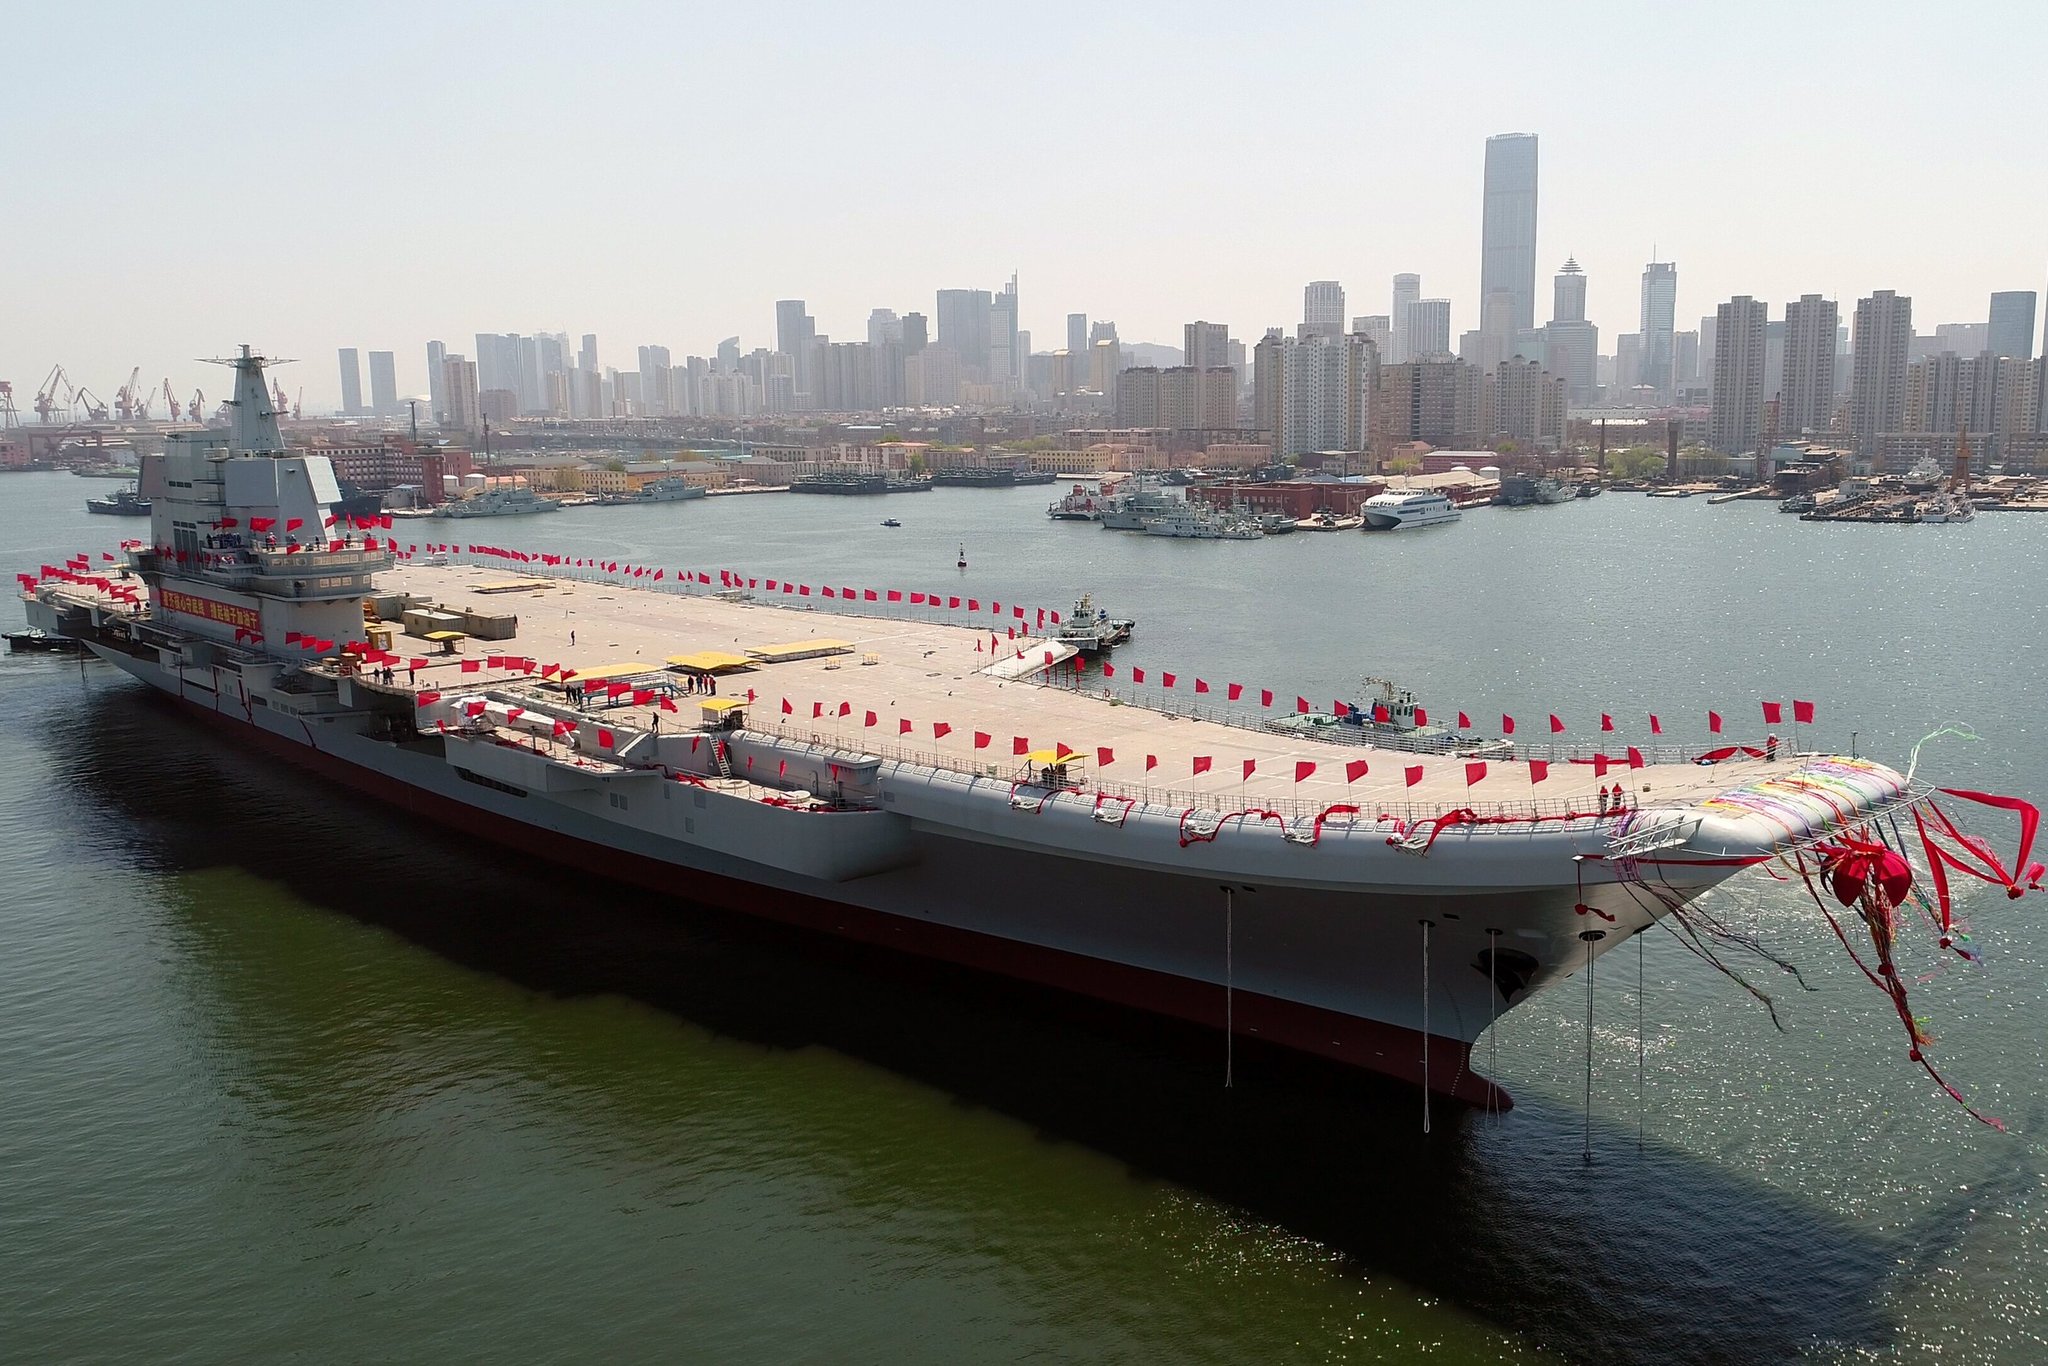 Βίντεο: ΗΠΑ ή Κίνα; – Μία σύγκριση των ναυτικών τους δυνάμεων